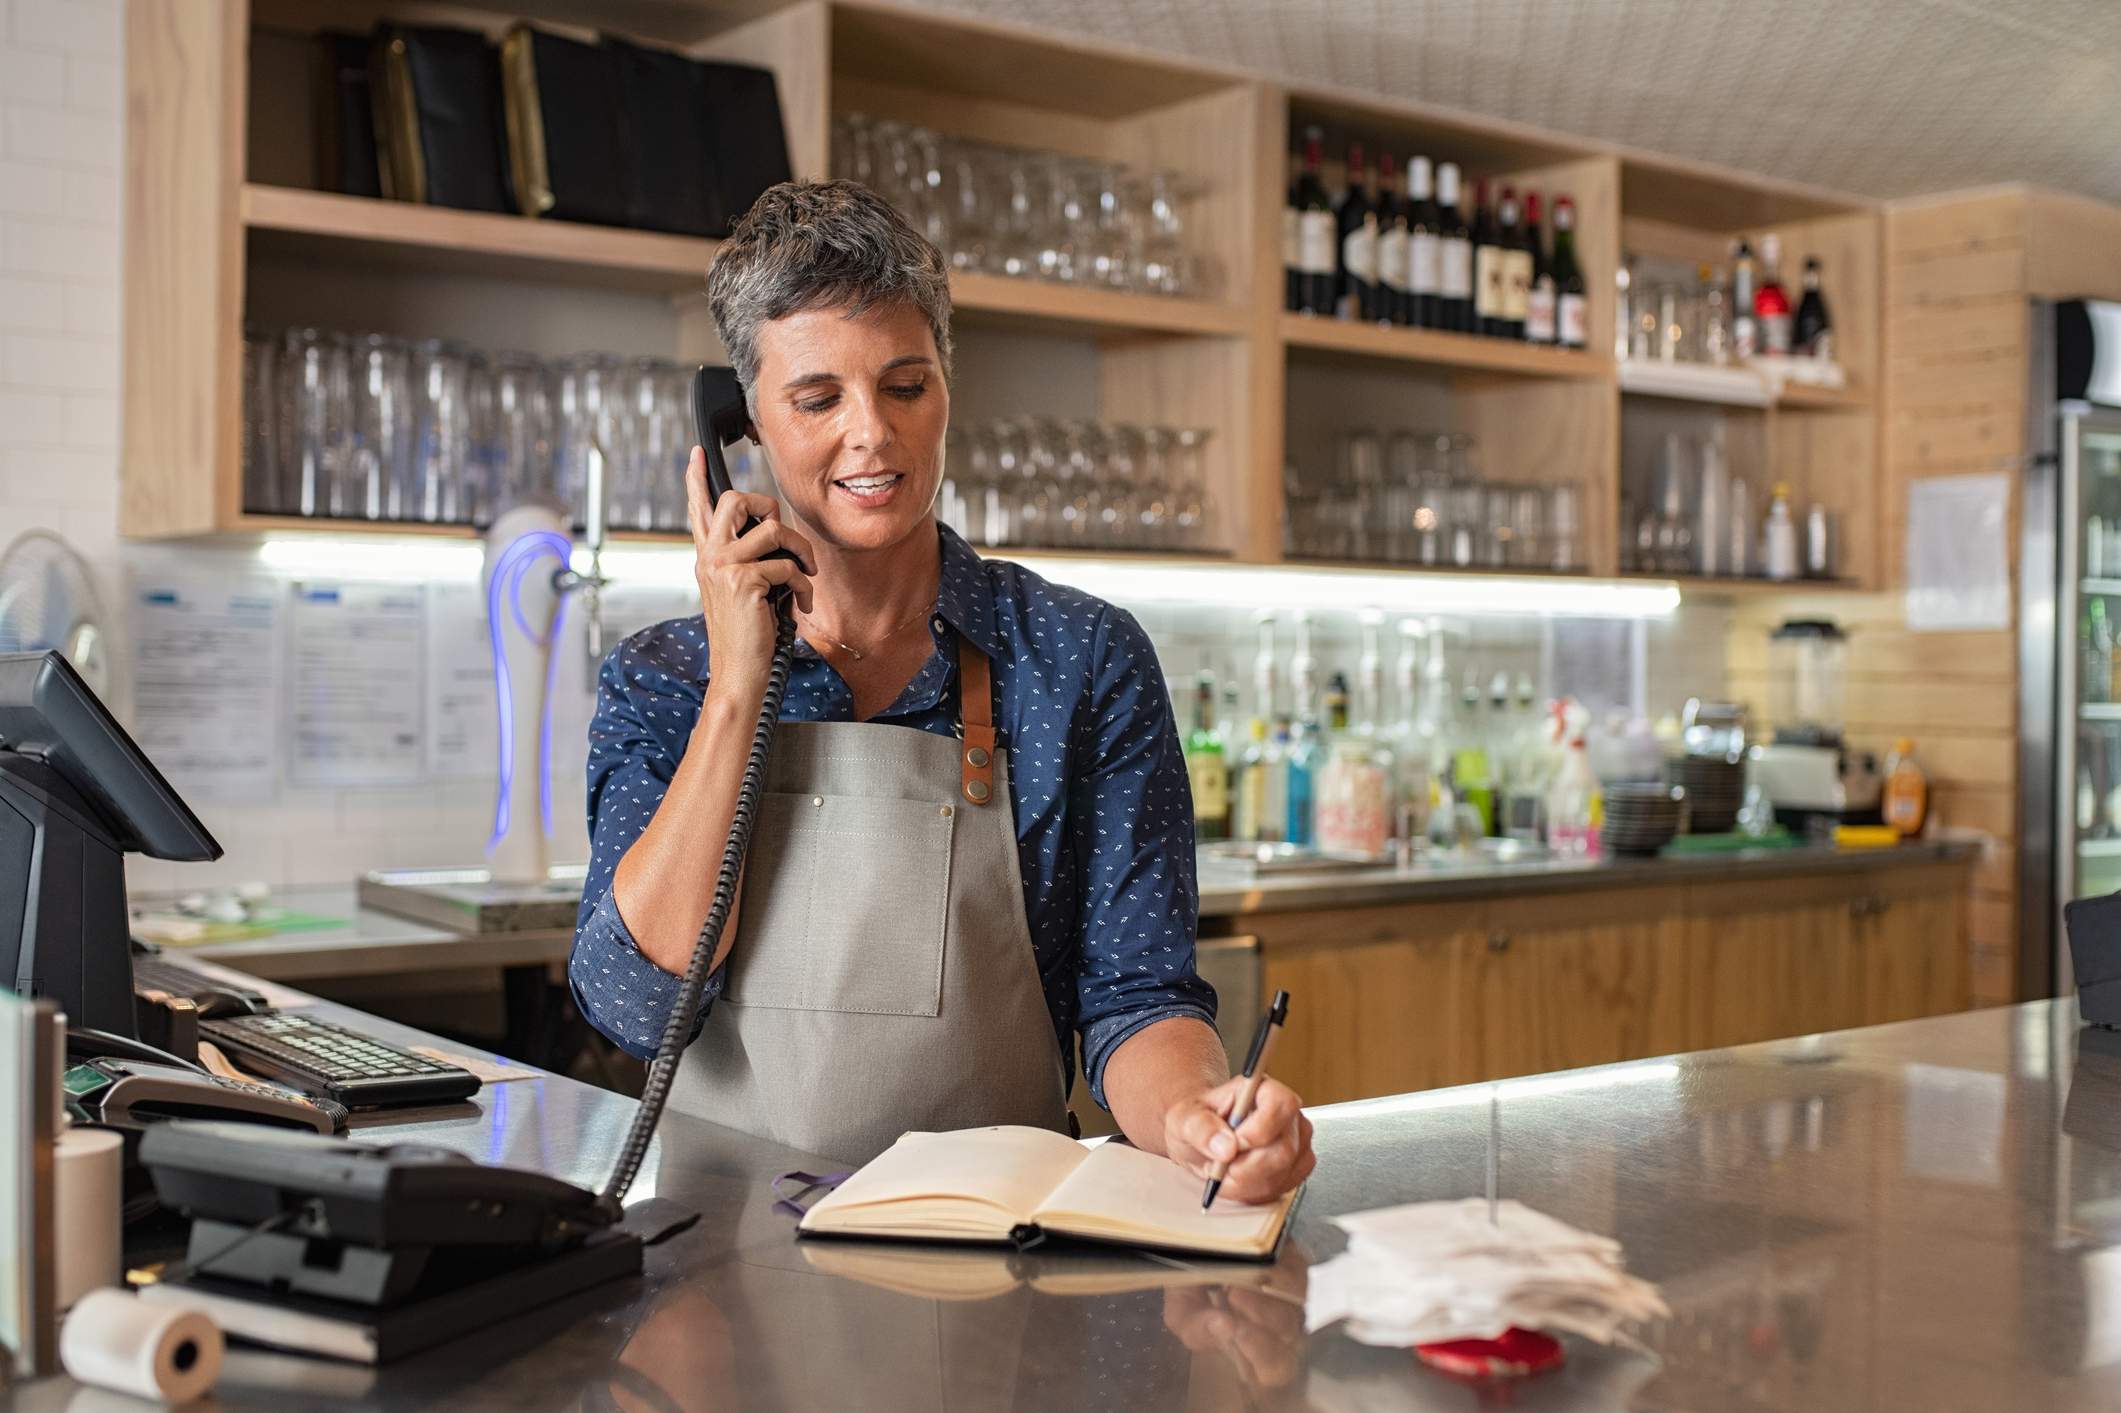 La imagen muestra a una trabajadora de restaurante en la recepción de un restaurante, hablando por teléfono mientras toma notas en un bloc de notas.